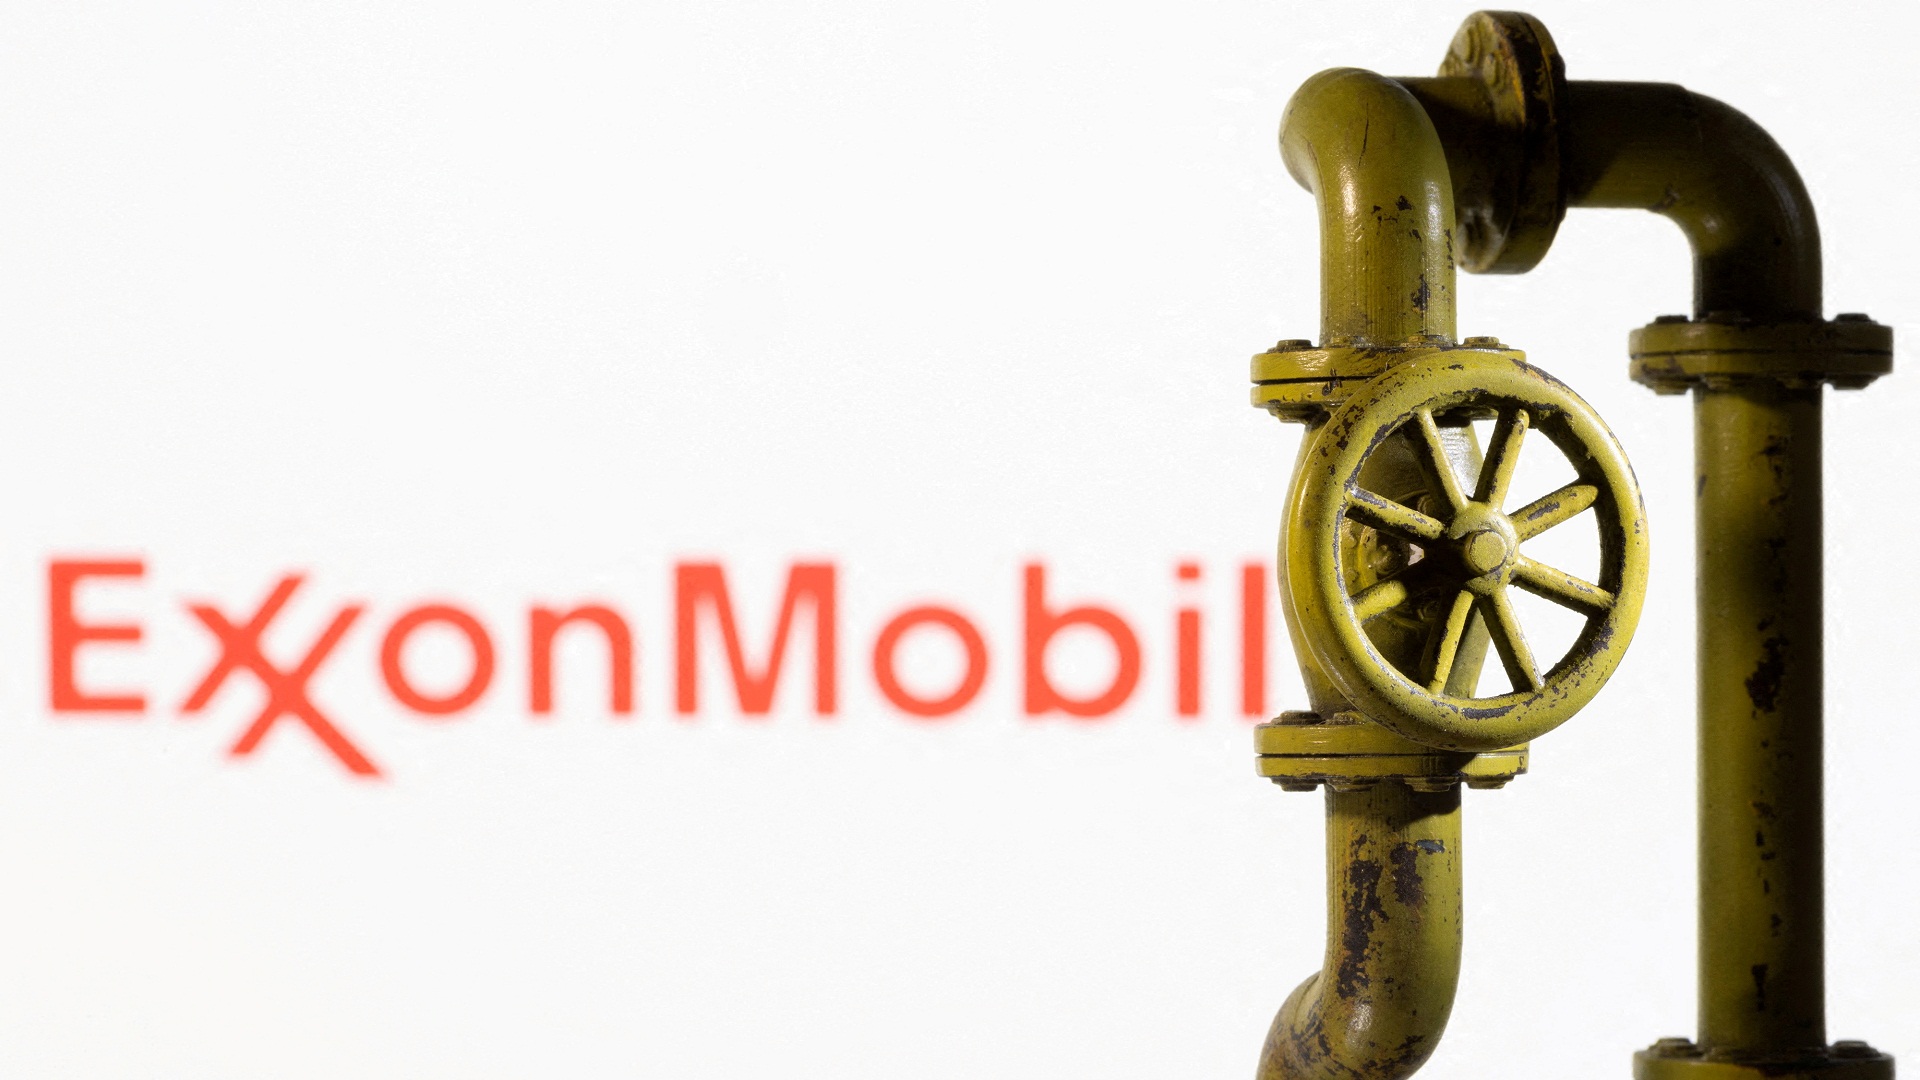 η τουρκία συζητά με την exxonmobil προμήθεια lng, για να μην εξαρτάται από τη ρωσία